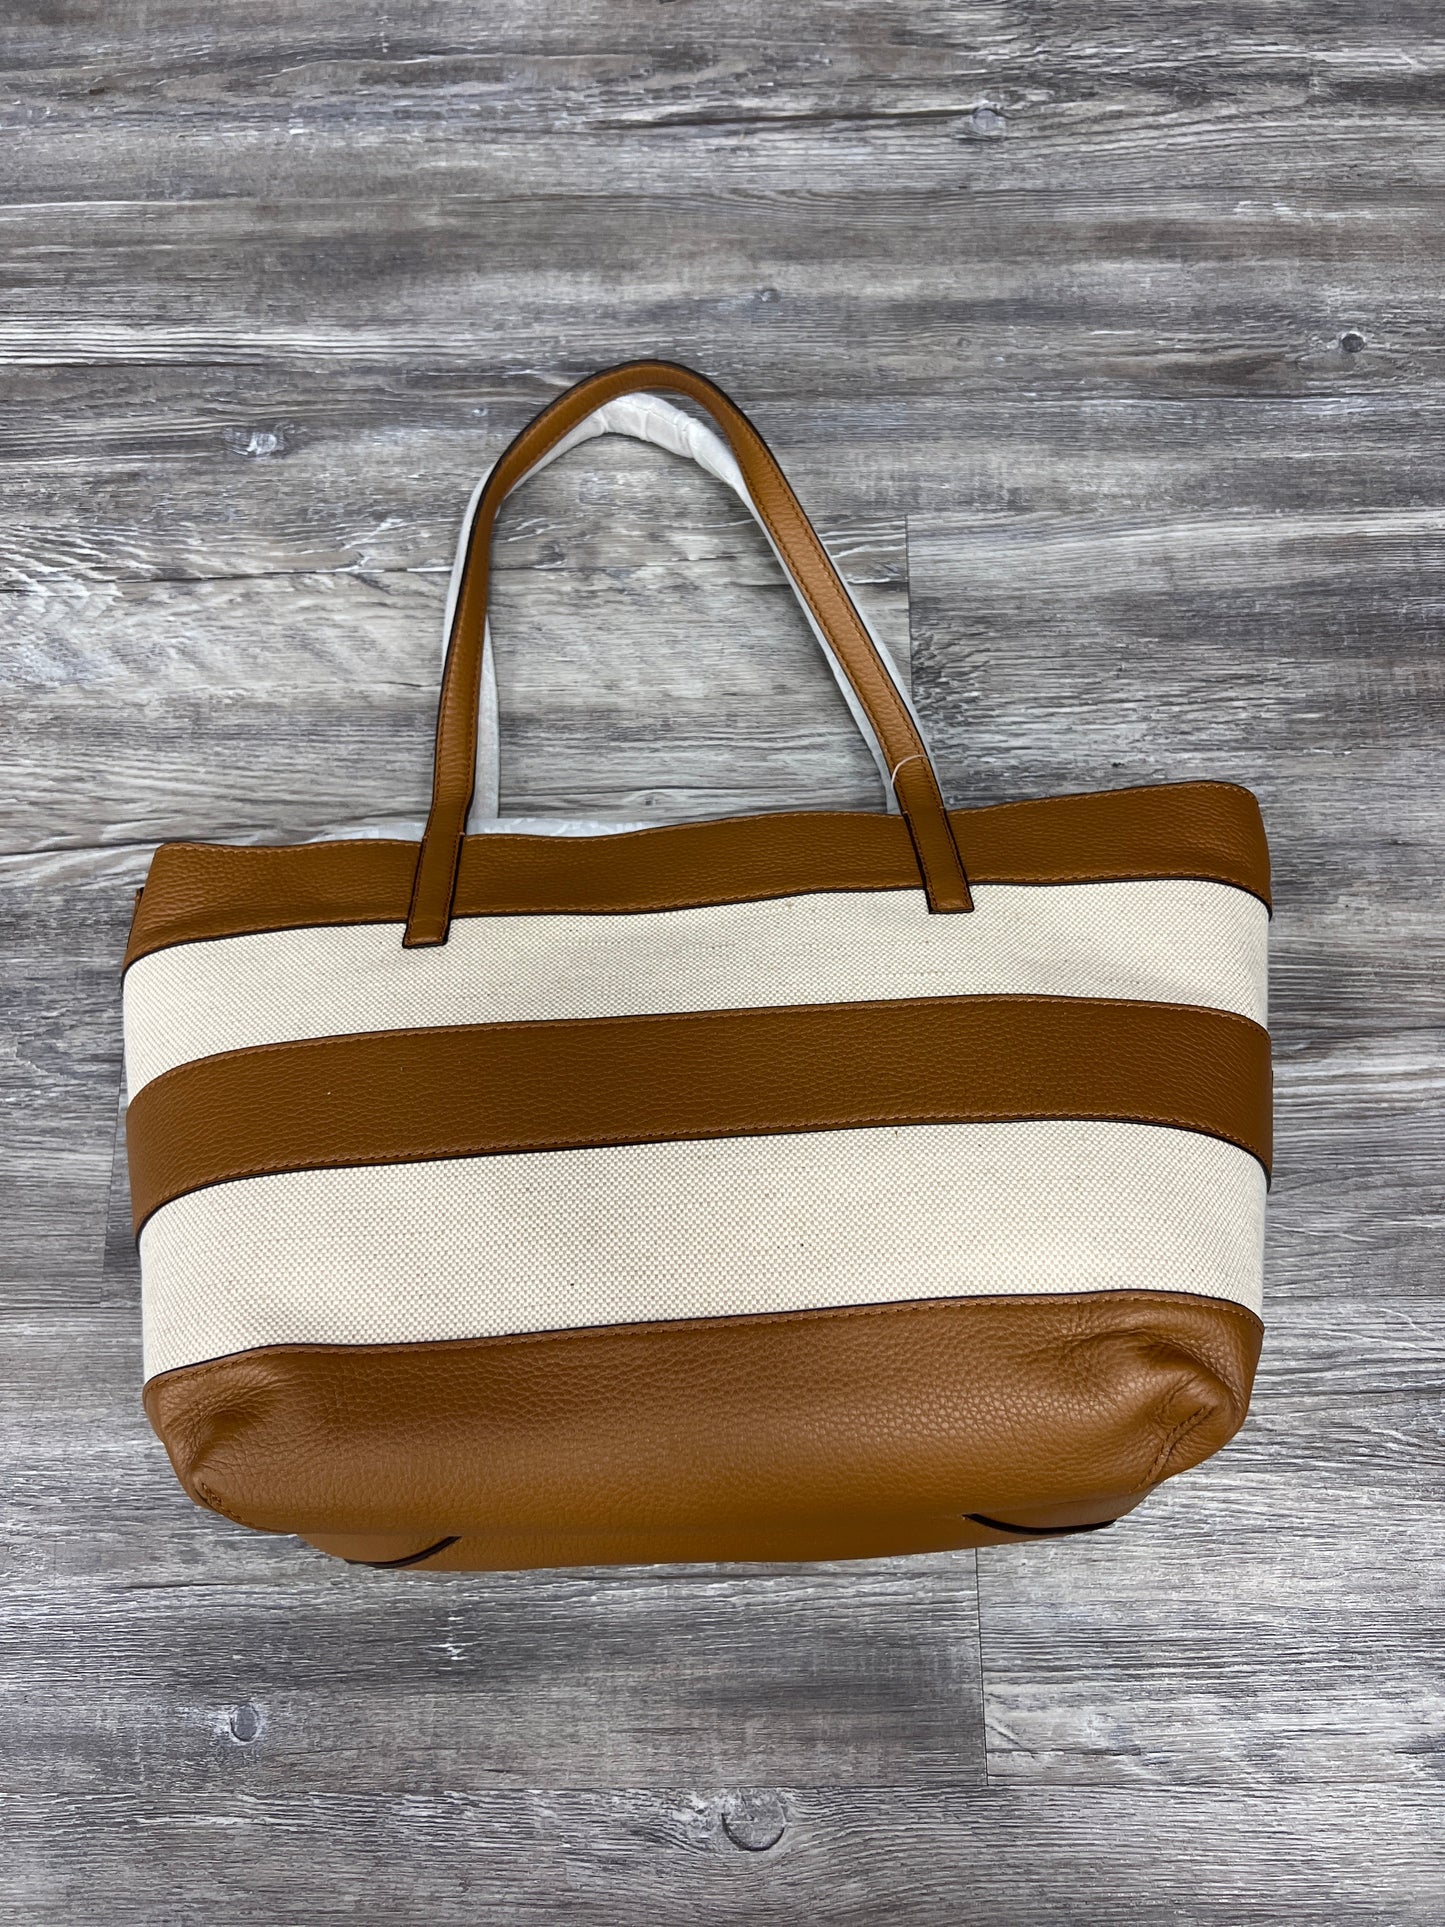 Handbag Designer By Michael Kors Size: Large